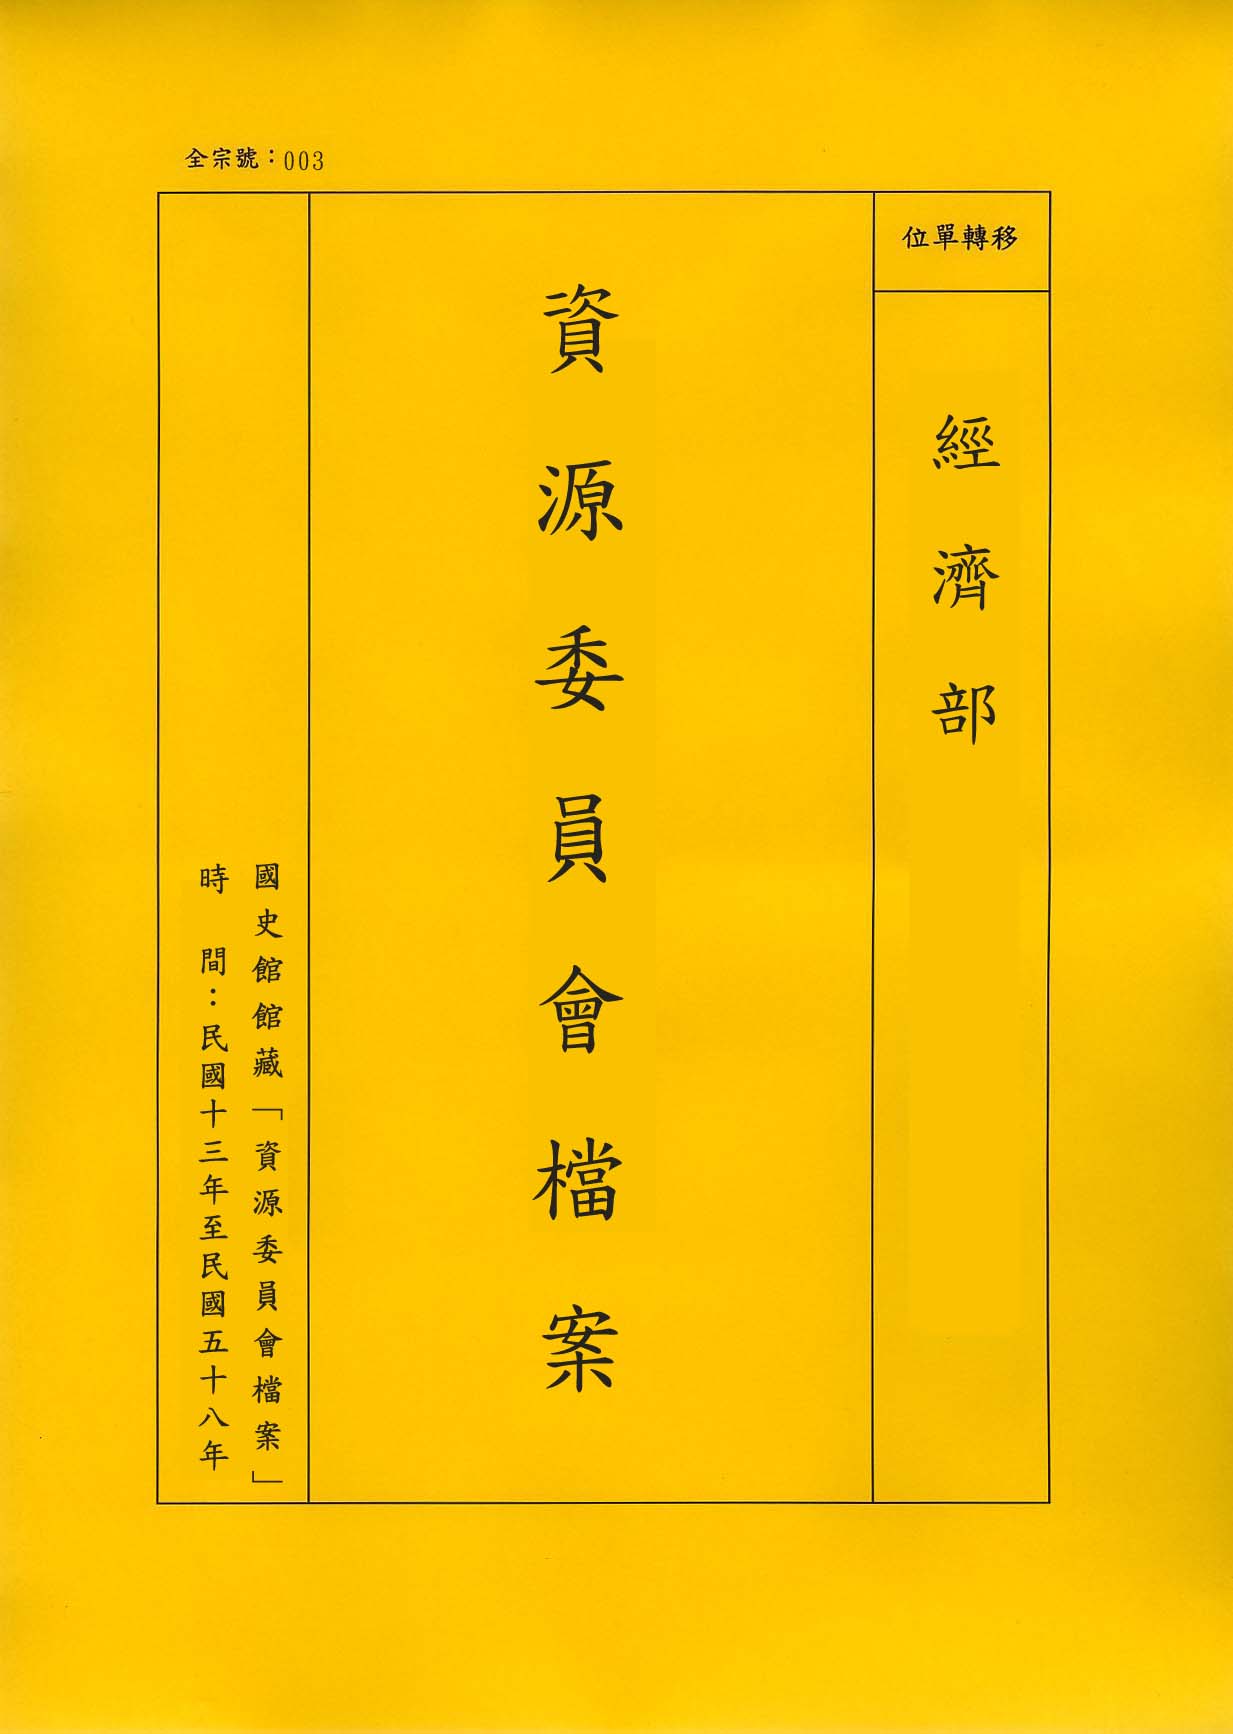 卷名:湘潭煤礦公司移交表冊(003-010302-0073)